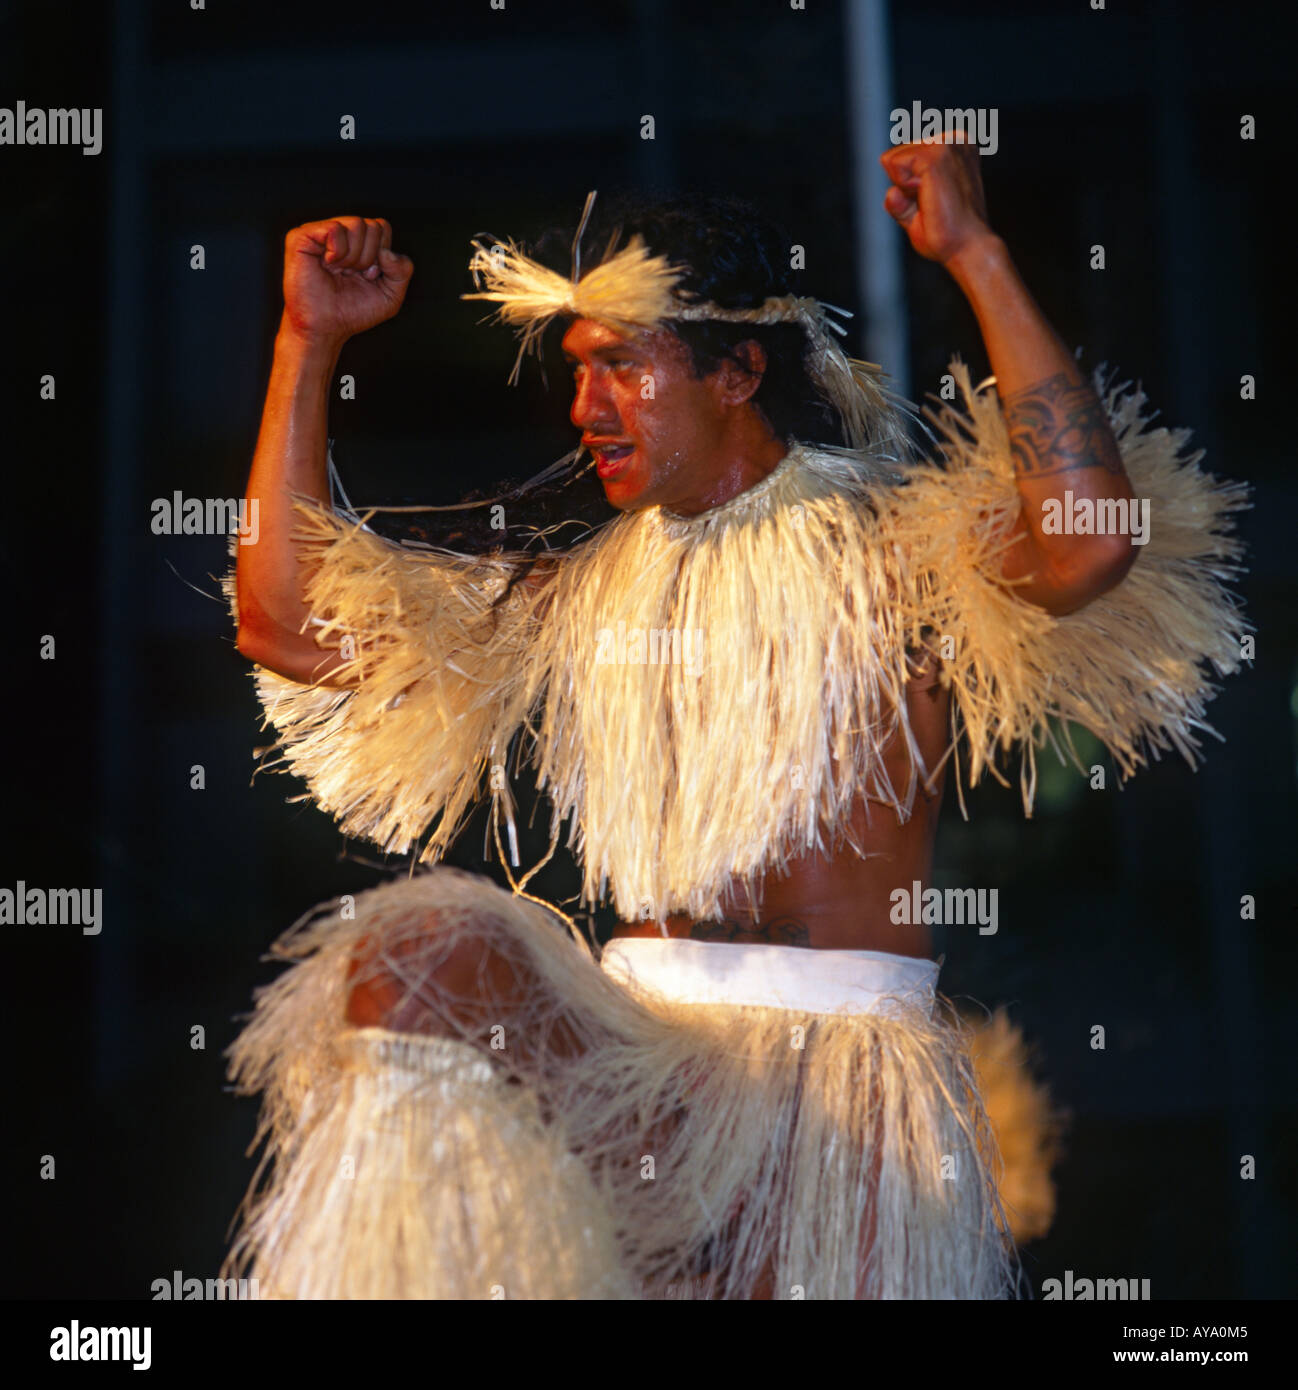 Smiling danseuse tahitienne en vêtements traditionnels porte grass skirt & top avec serre-tête et bras levés Banque D'Images